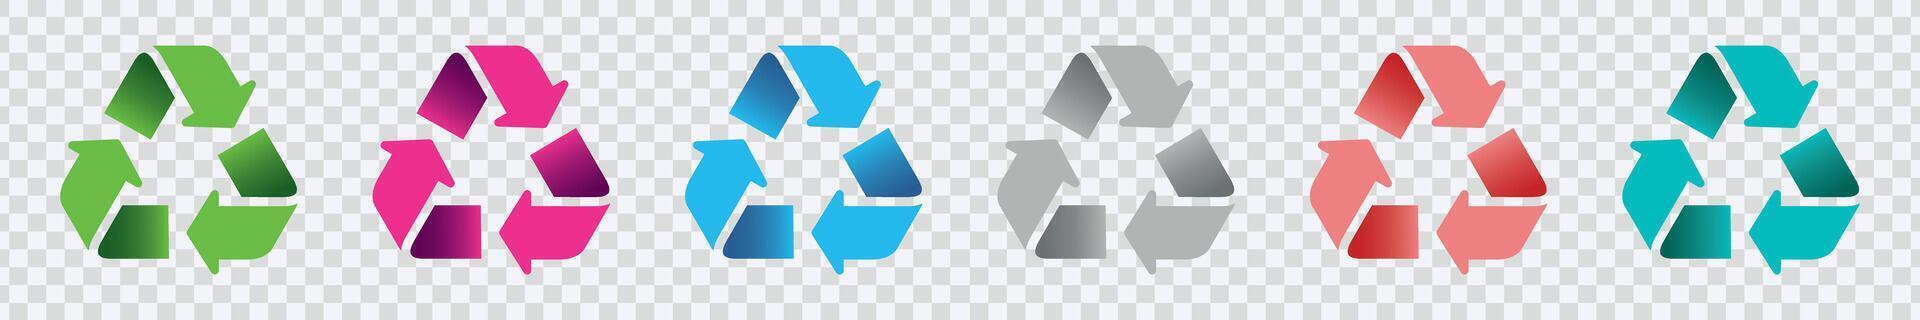 illustrera ekomedvetenhet med vibrerande återvinning ikoner. färgrik symboler för hållbarhet vektor